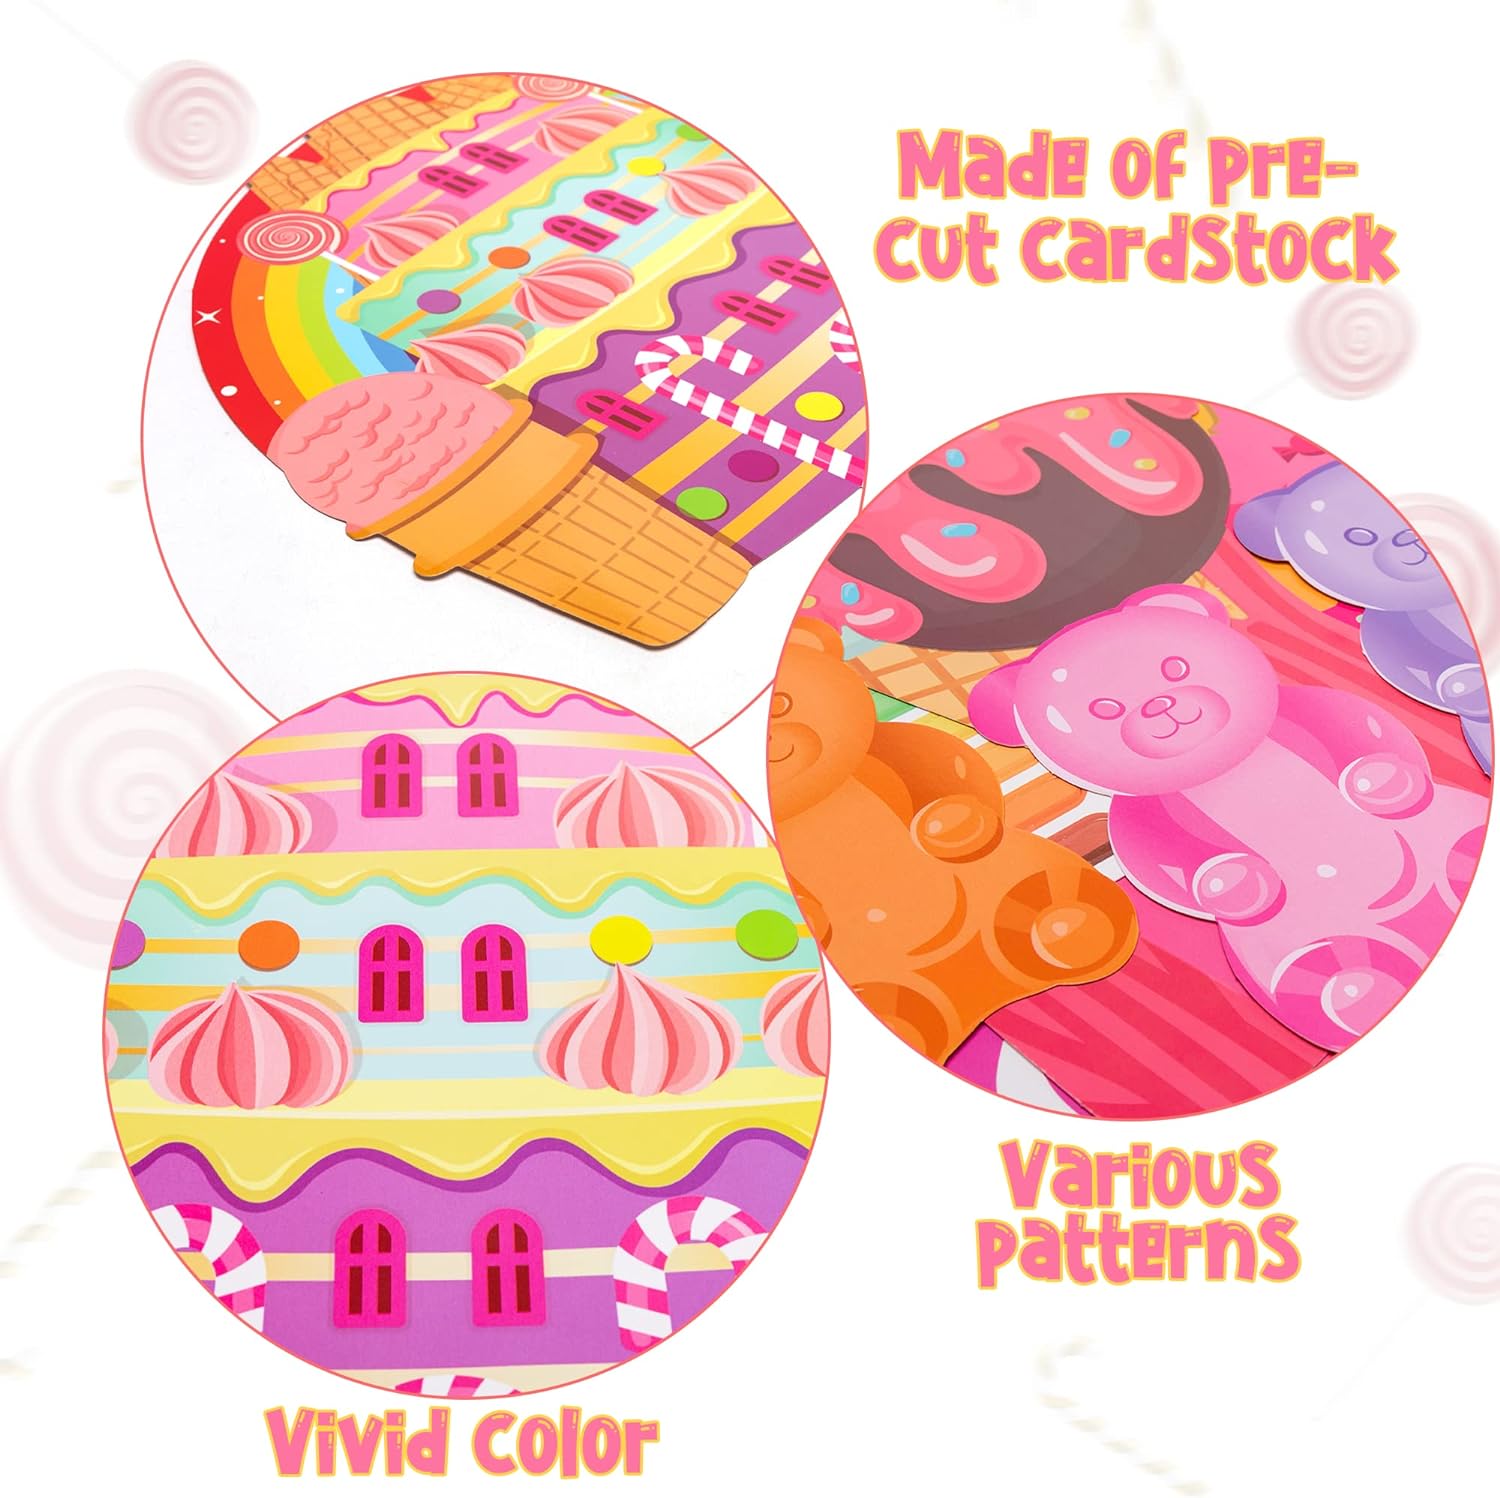 B1ykin Juego de 50 piezas de decoración de tablones de anuncios de Candyland